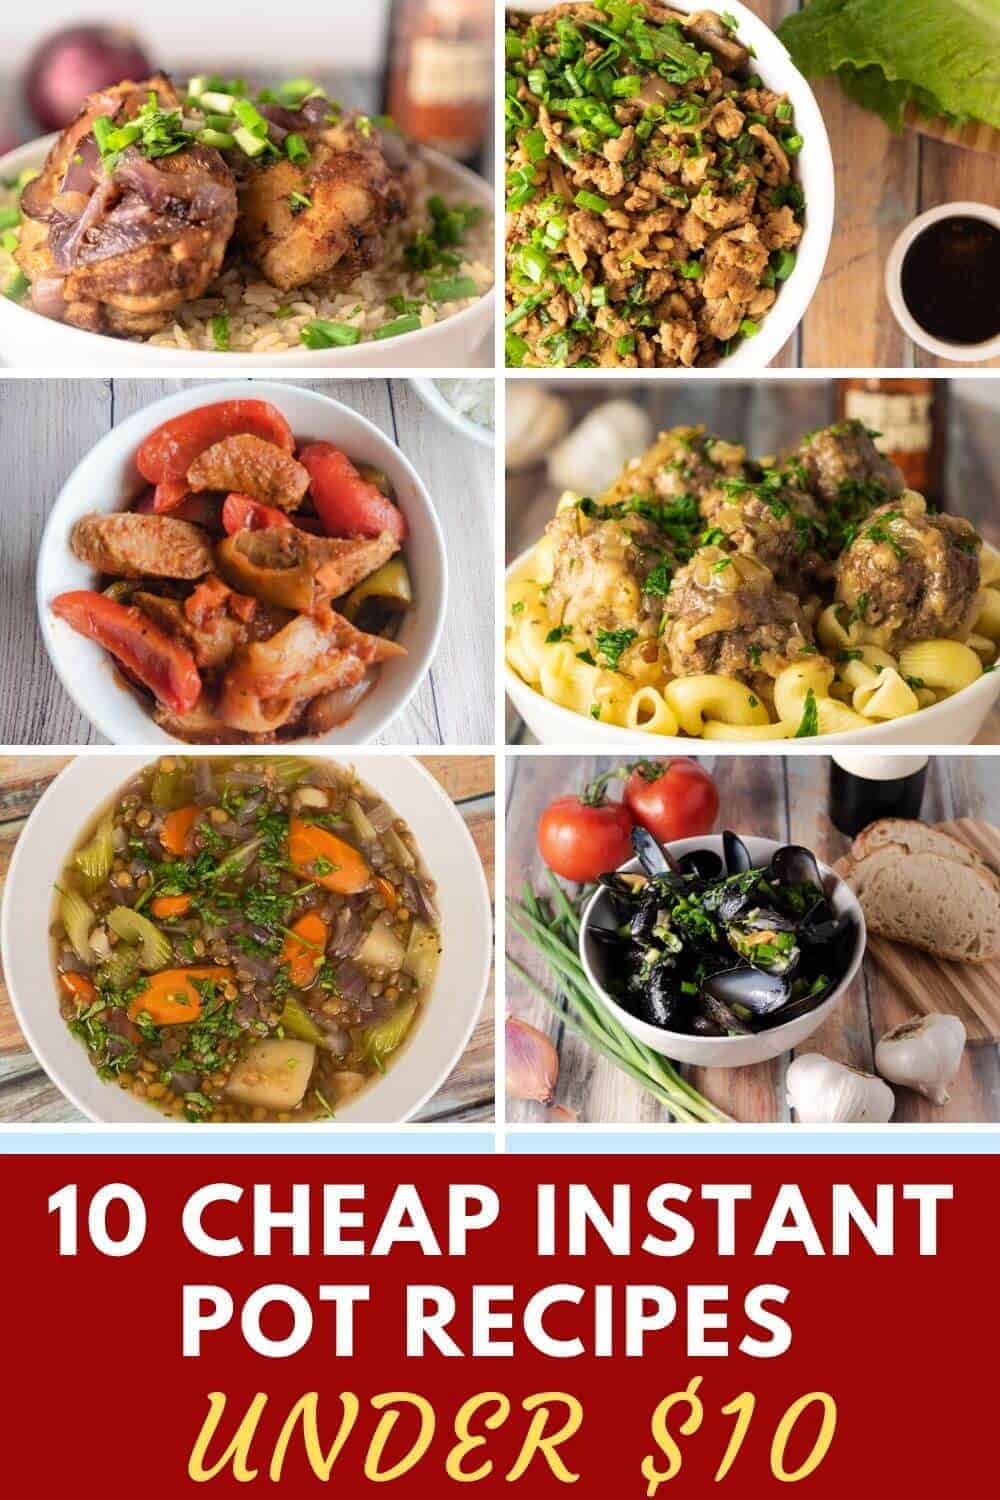 10 Cheap Instant Pot Recipes Under $10